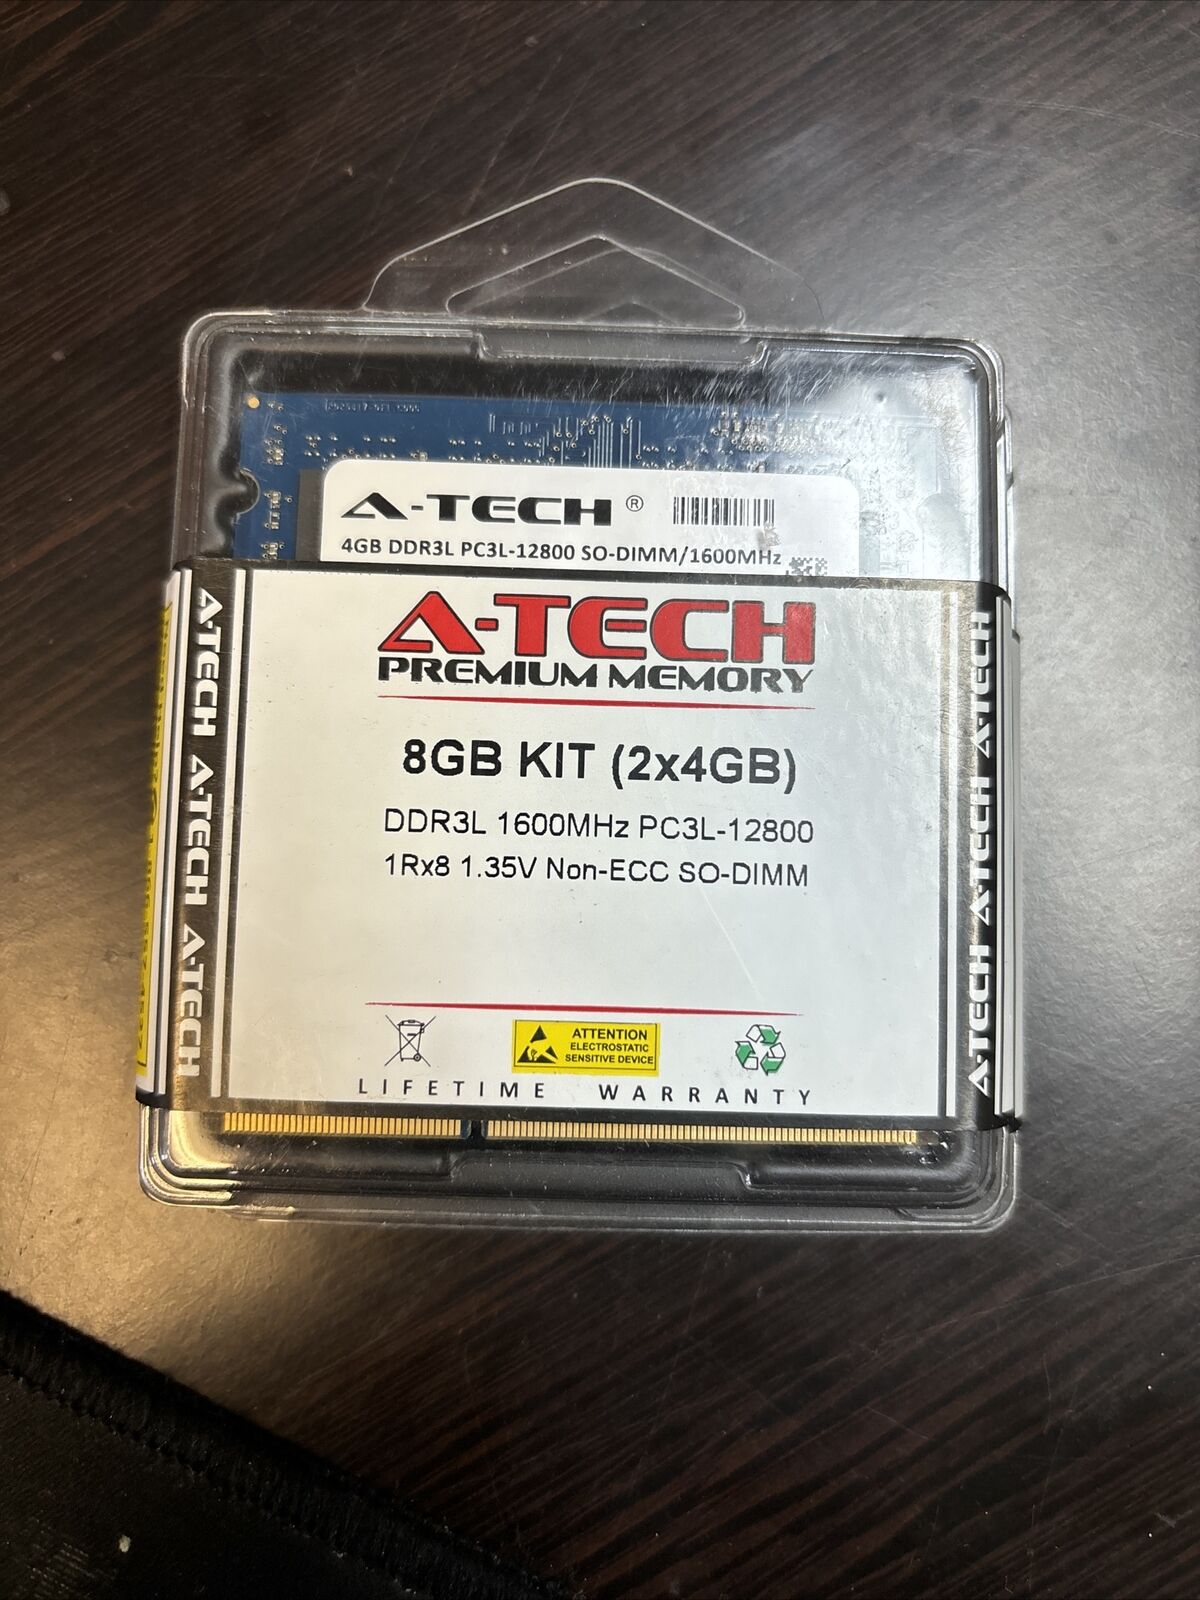 Atech DDR3L (2x4GB) LOT of 5